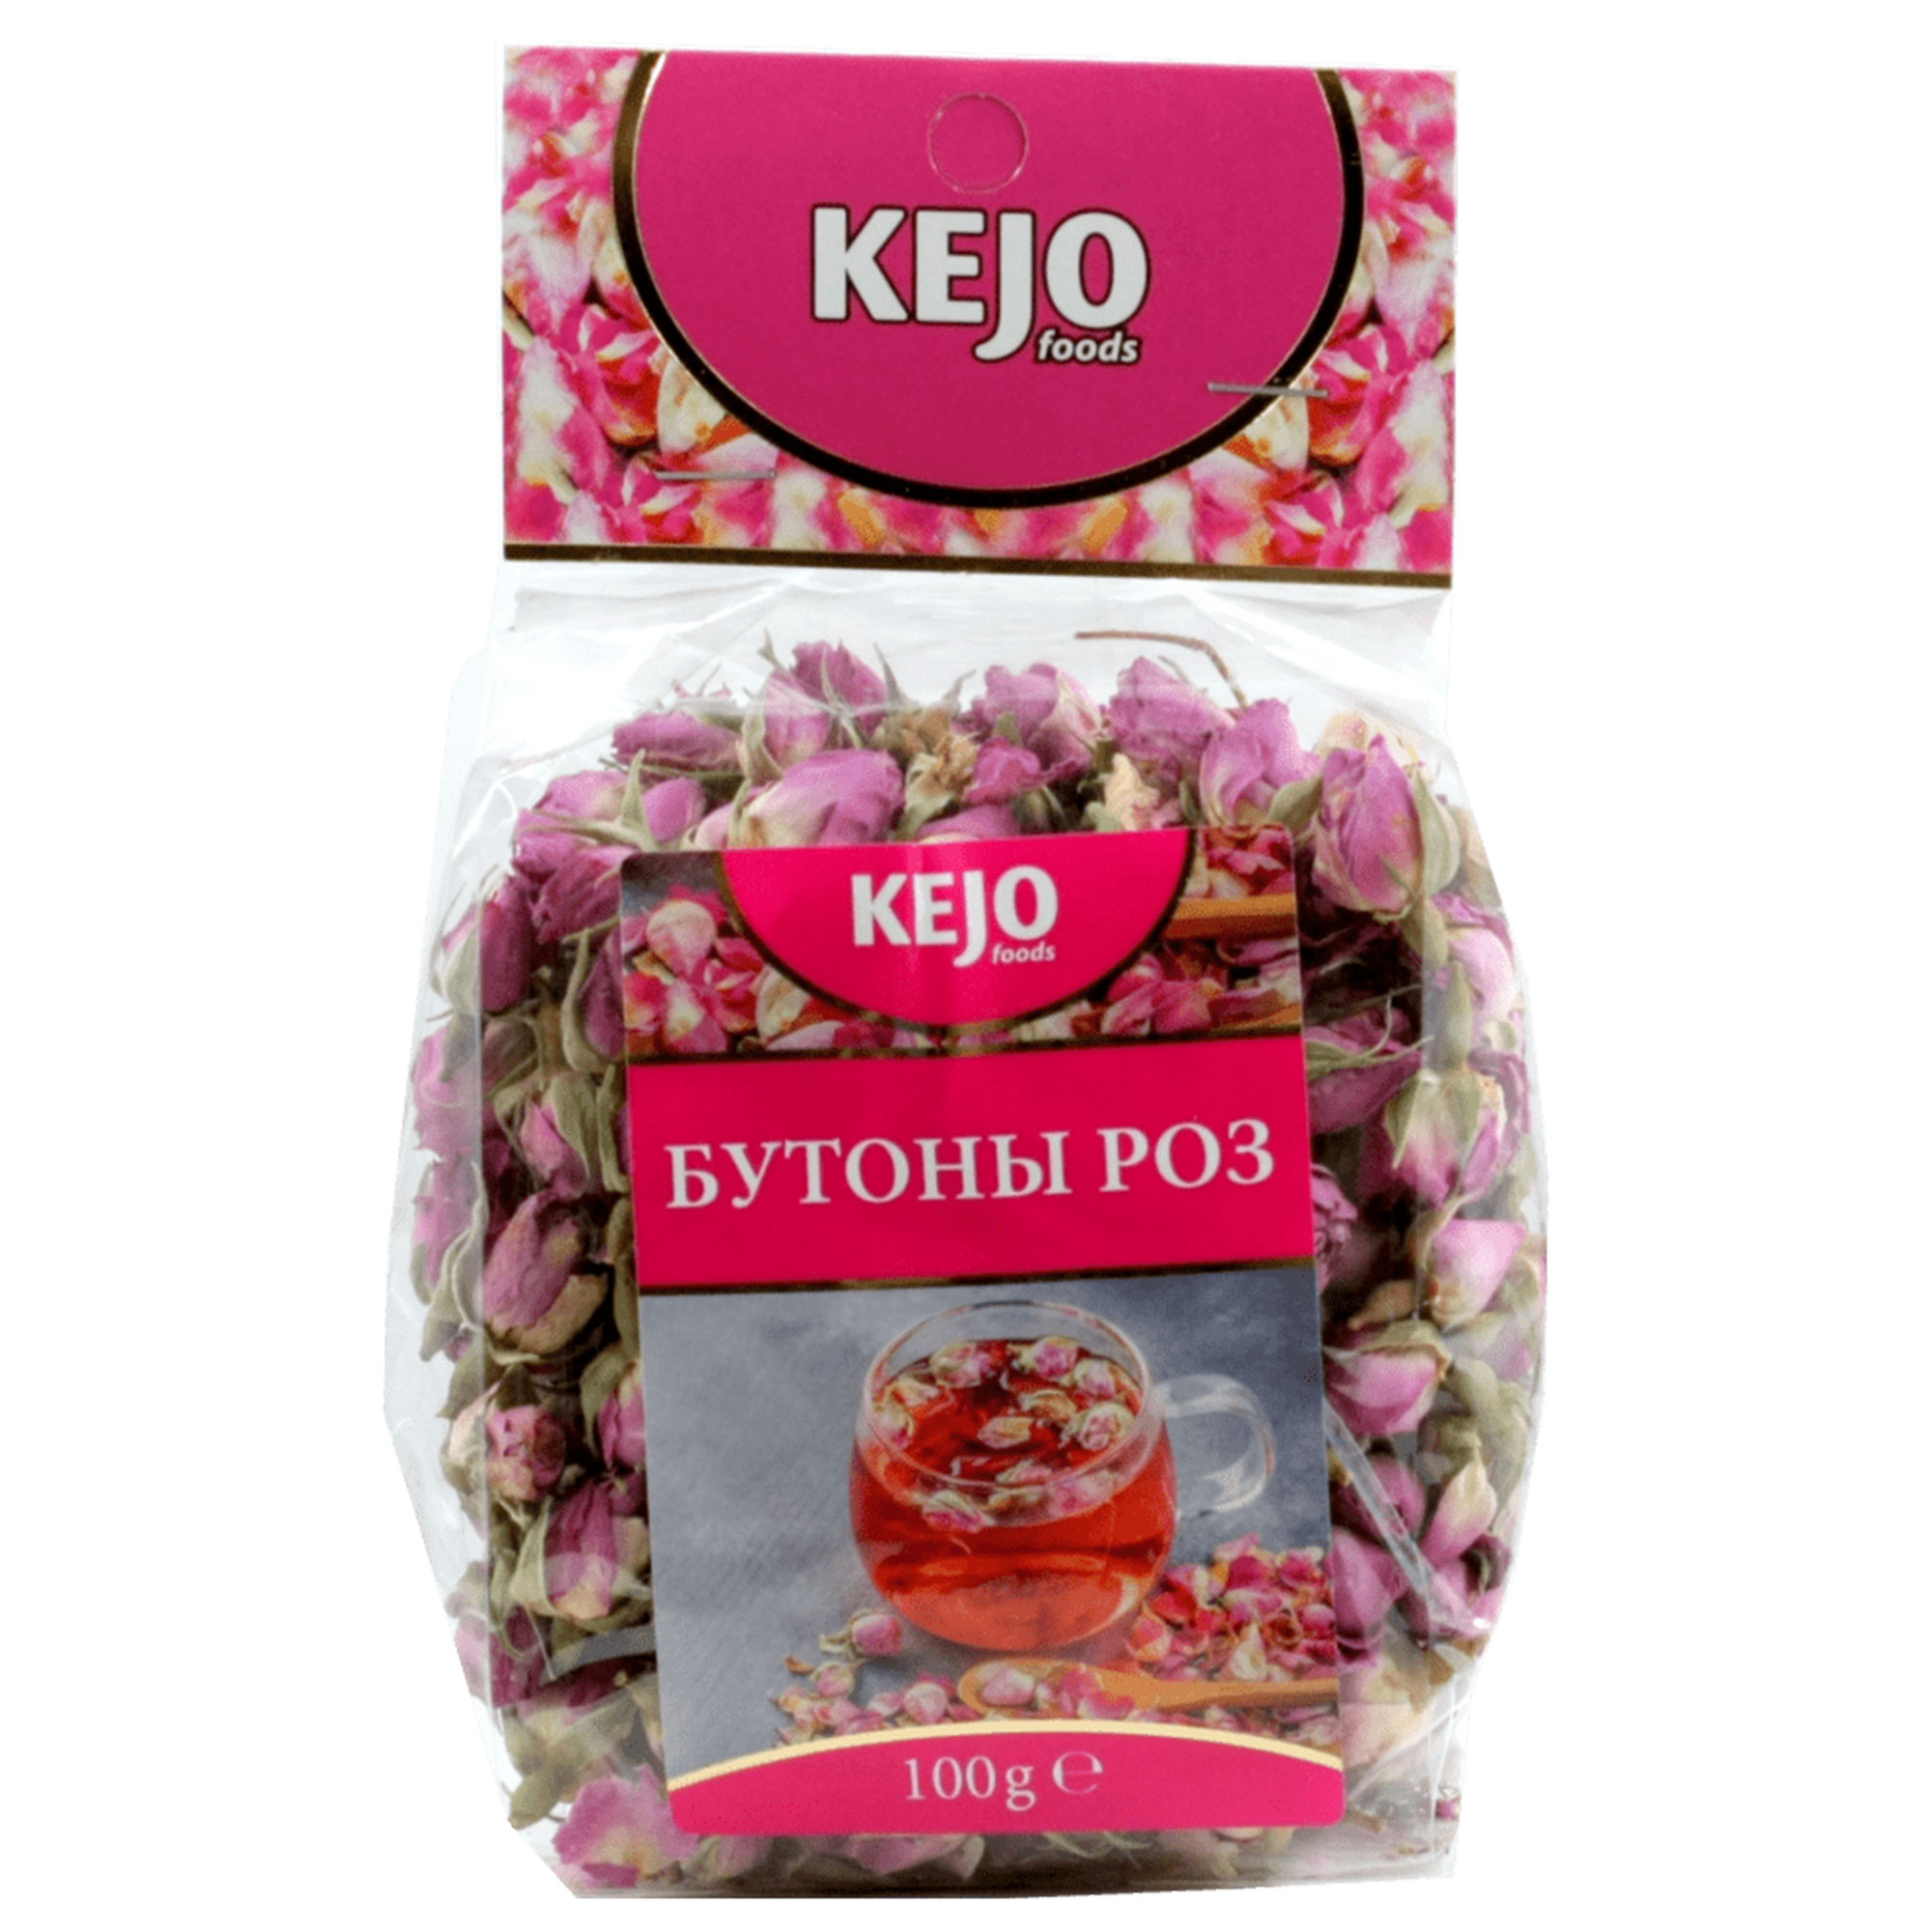 Чайный напиток Kejo Foods Бутоны роз 100 г чайный напиток иван чай капорский time листовой с медом пирамидки в саше 2 г х 20 шт